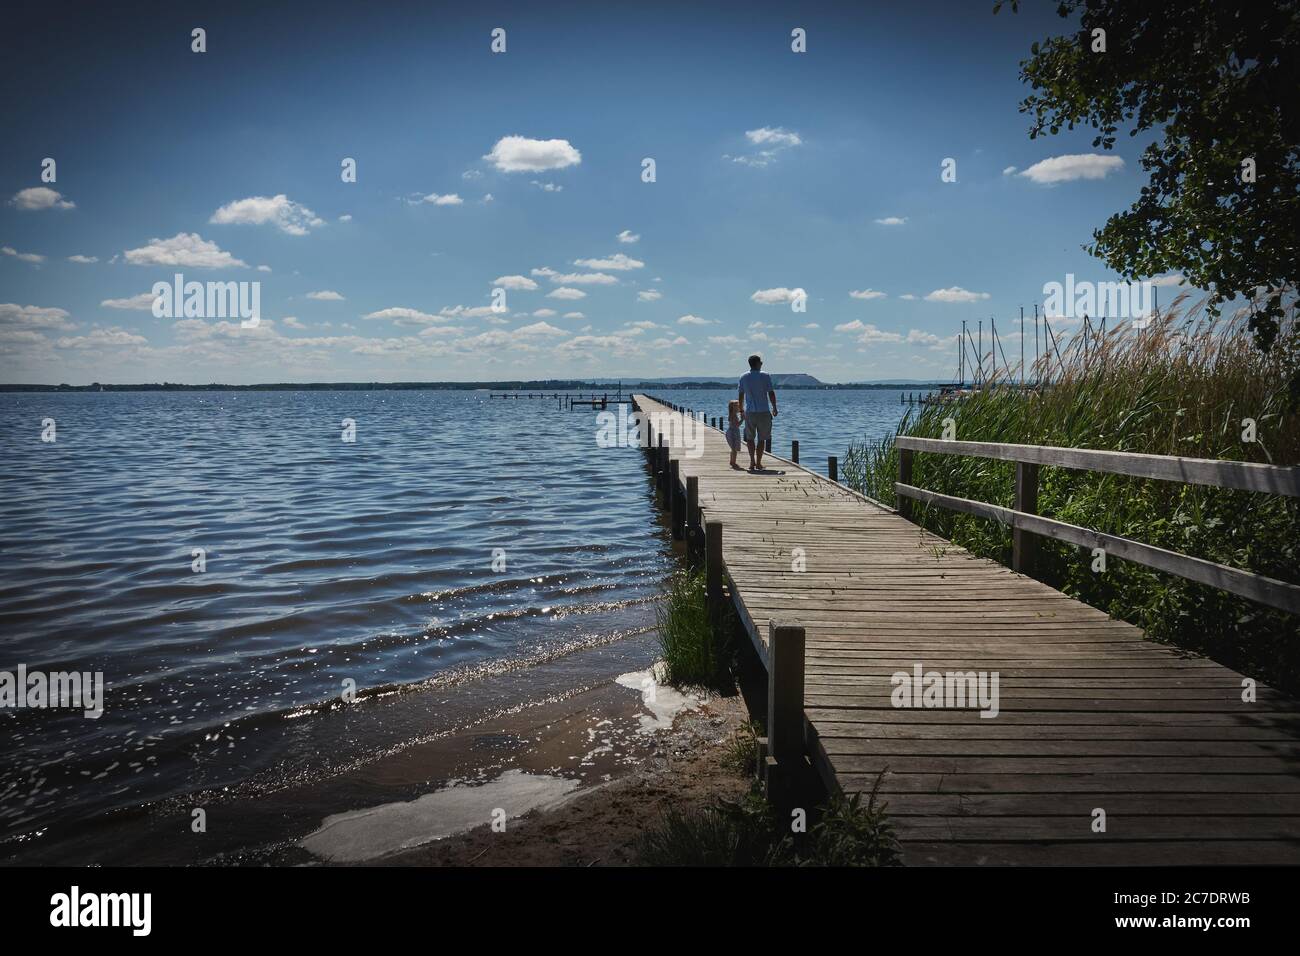 Steinhude, Germania, 29 maggio 2020: Padre con bambino in mano cammina su un lungo molo di legno attraverso il lago, vignetta scura Foto Stock